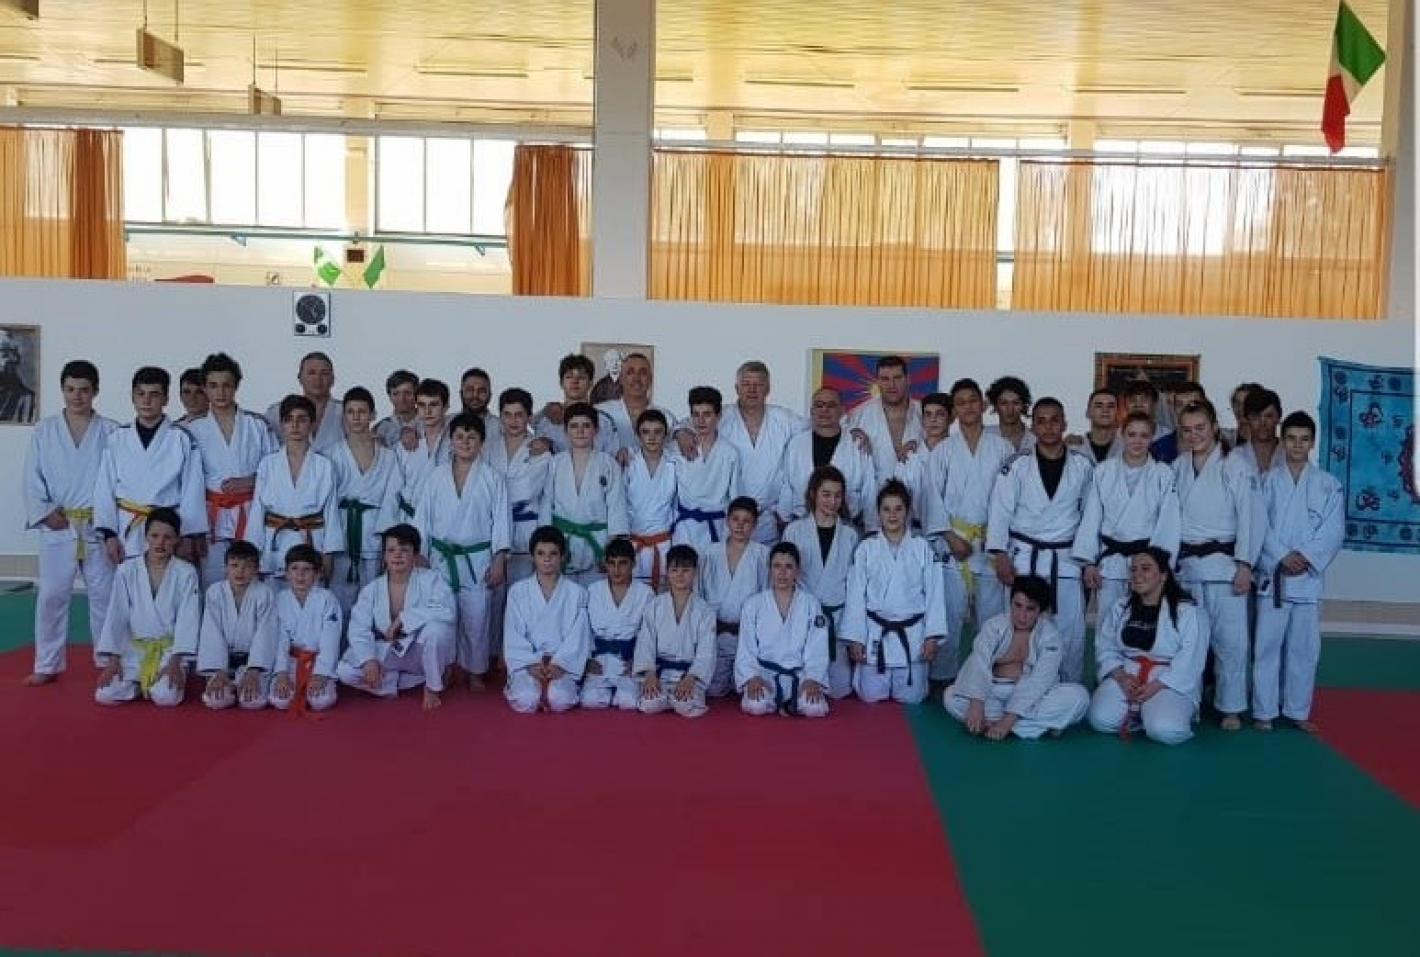 images/emilia_romagna/articoli/2019/judo/medium/WhatsApp_Image_2019-04-20_at_17.18.20.jpeg